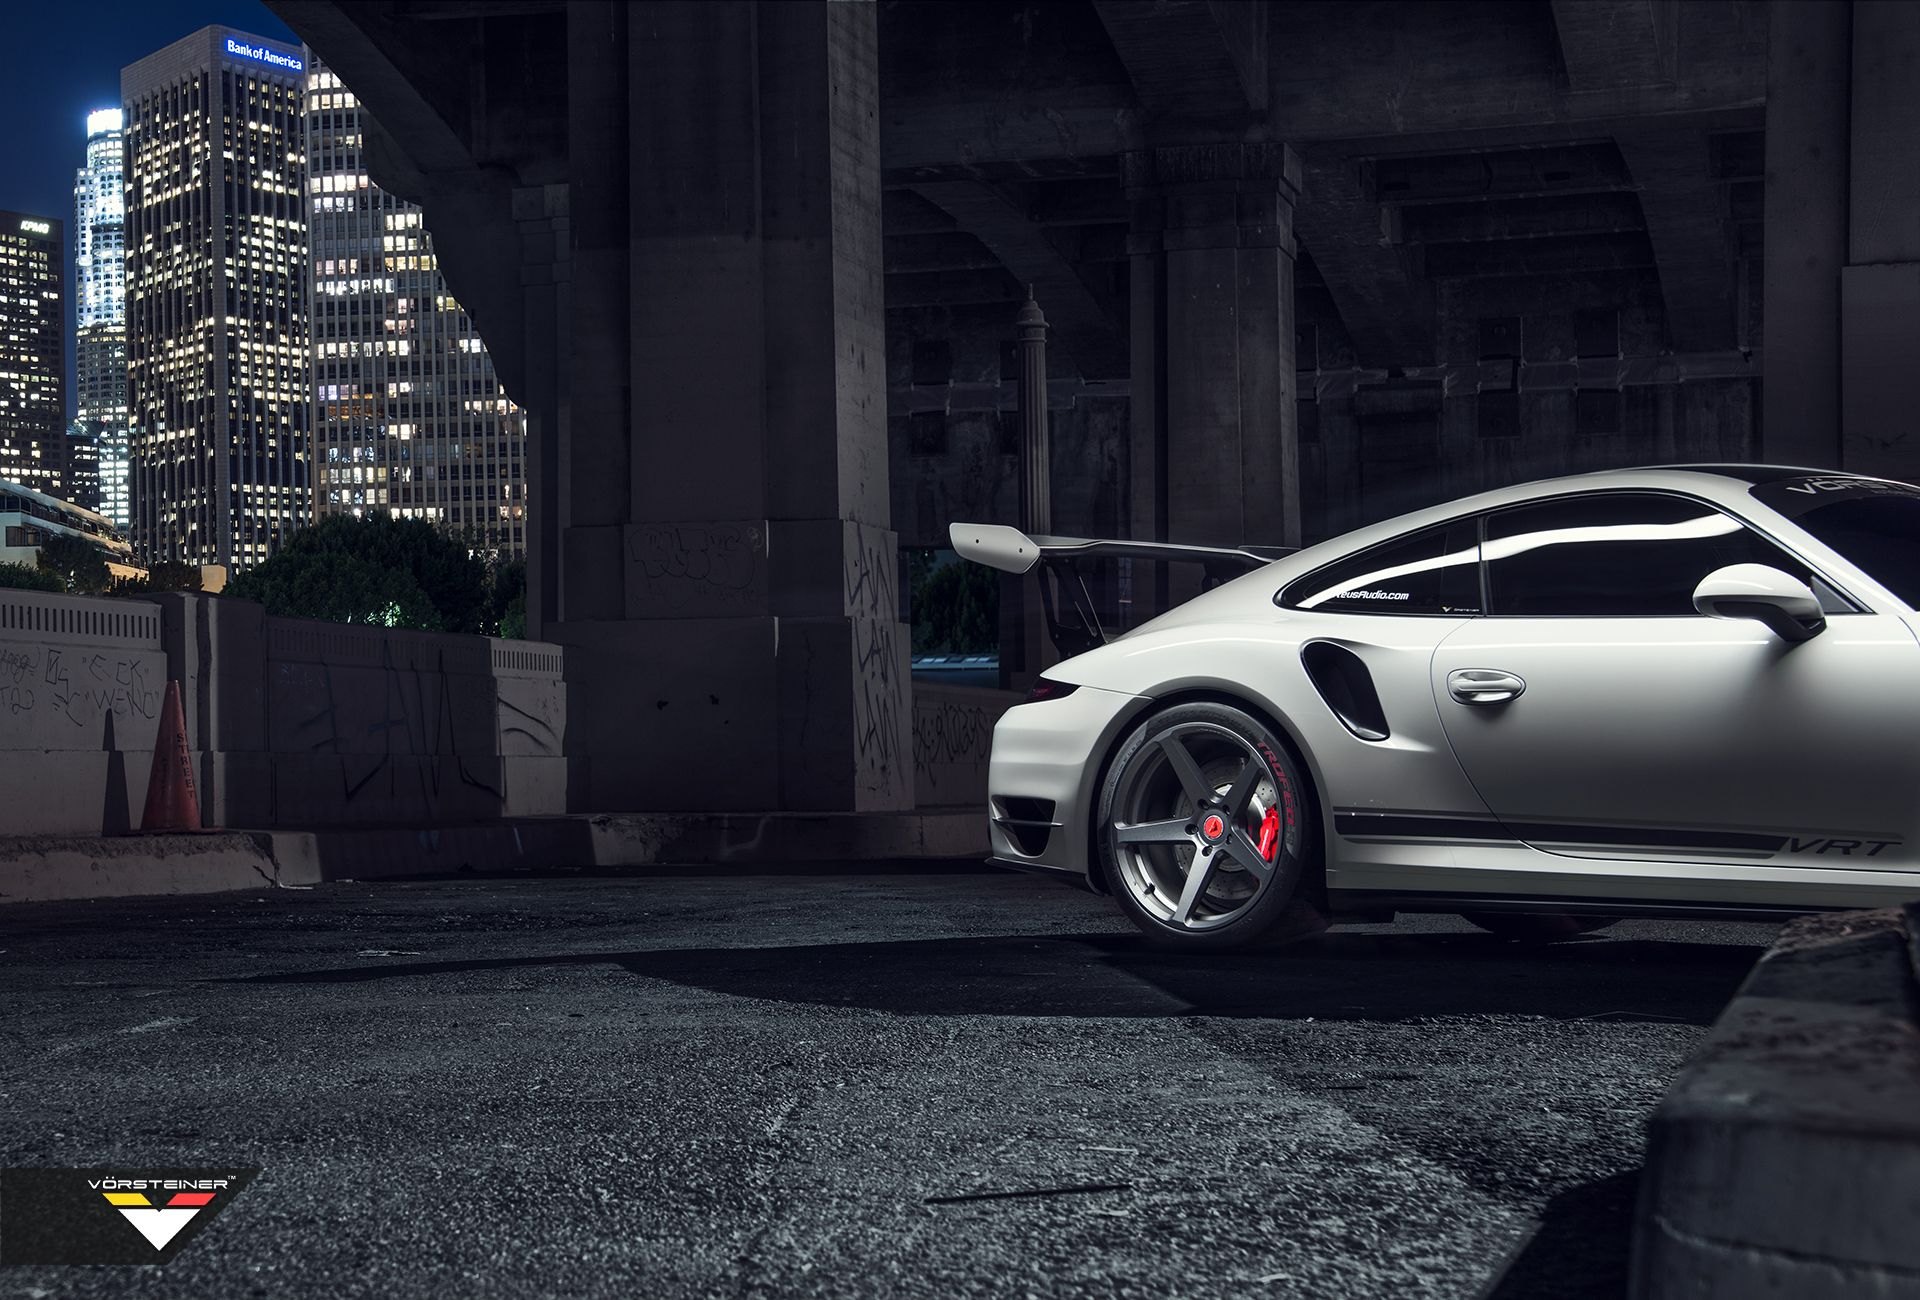 Carbon Graphite Vorsteiner Rims on White Porsche 911 - Photo by Vorstiner